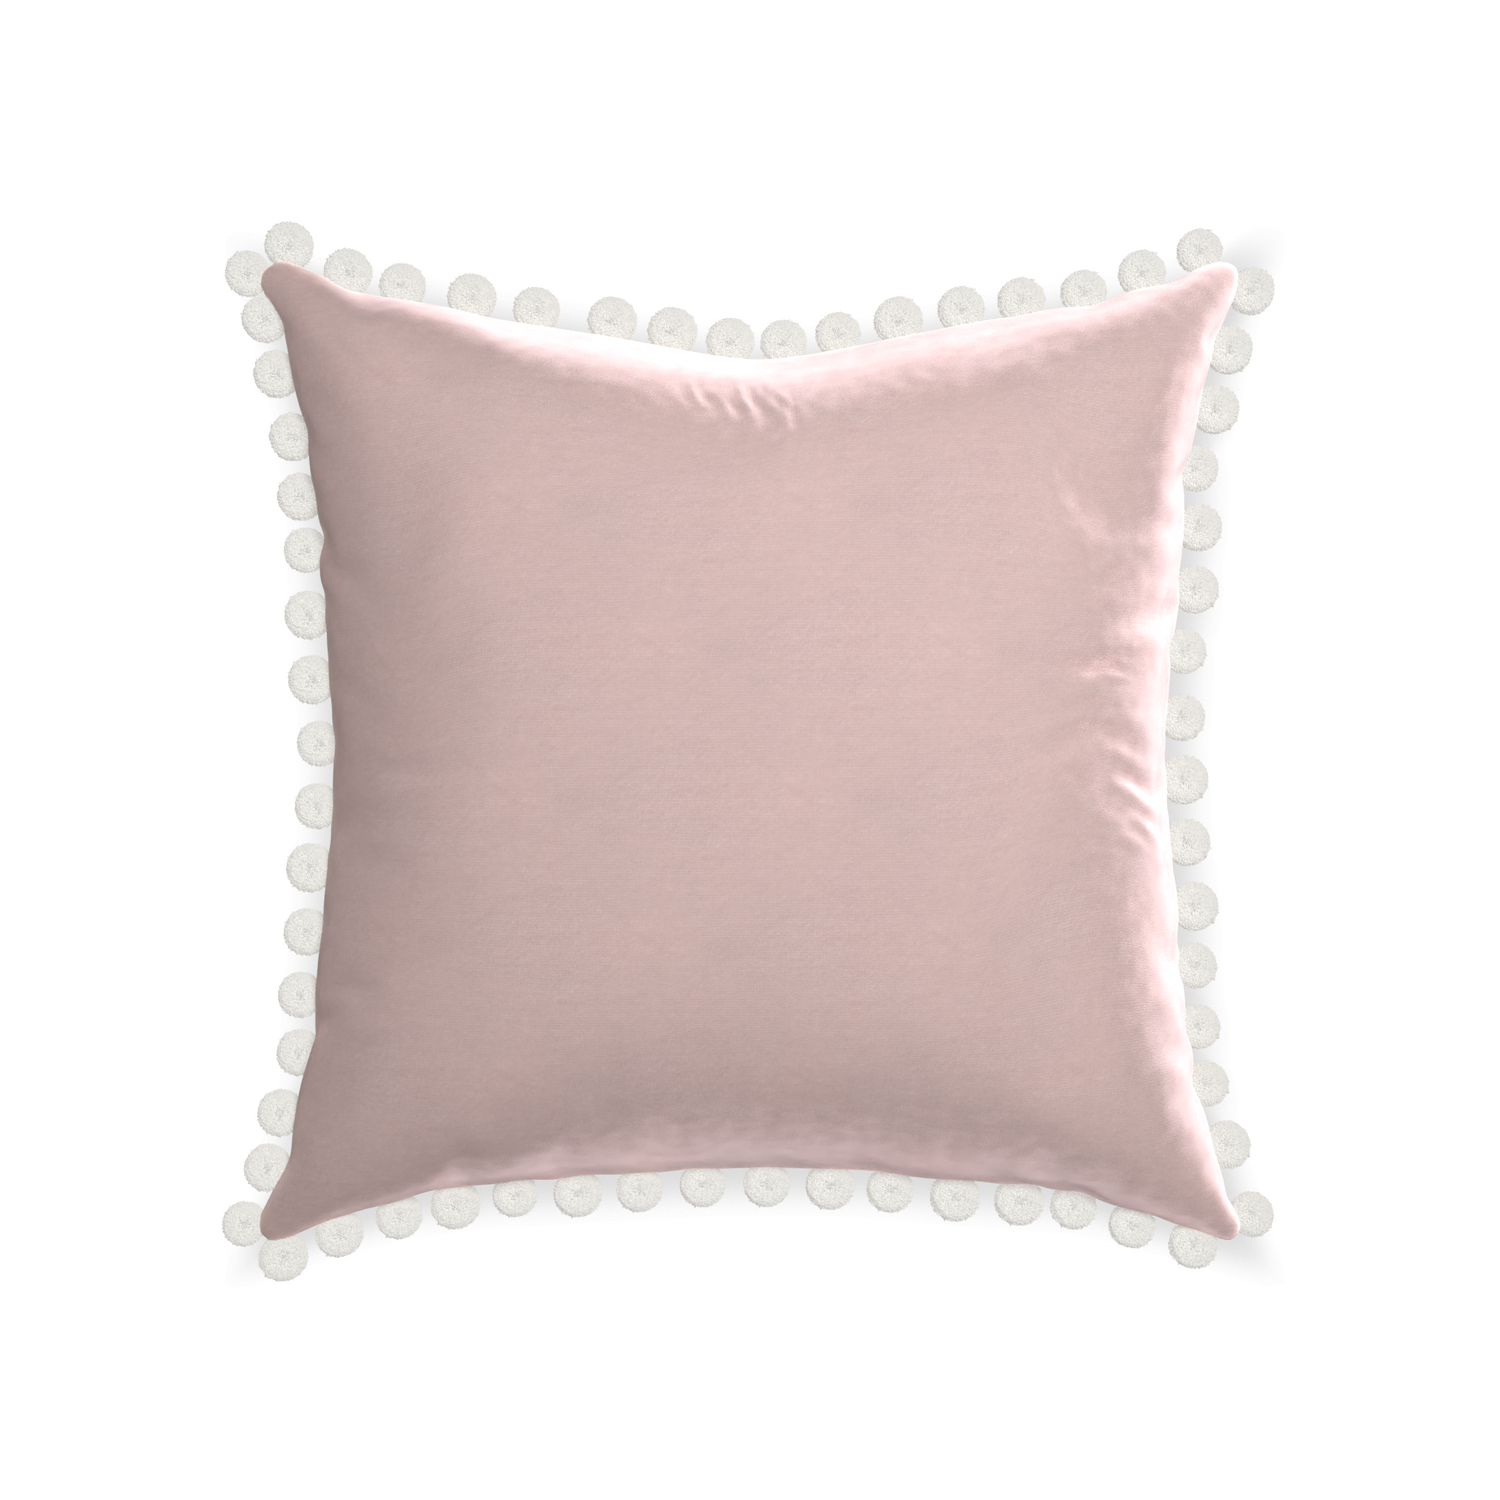 square light pink velvet pillow with white pom poms